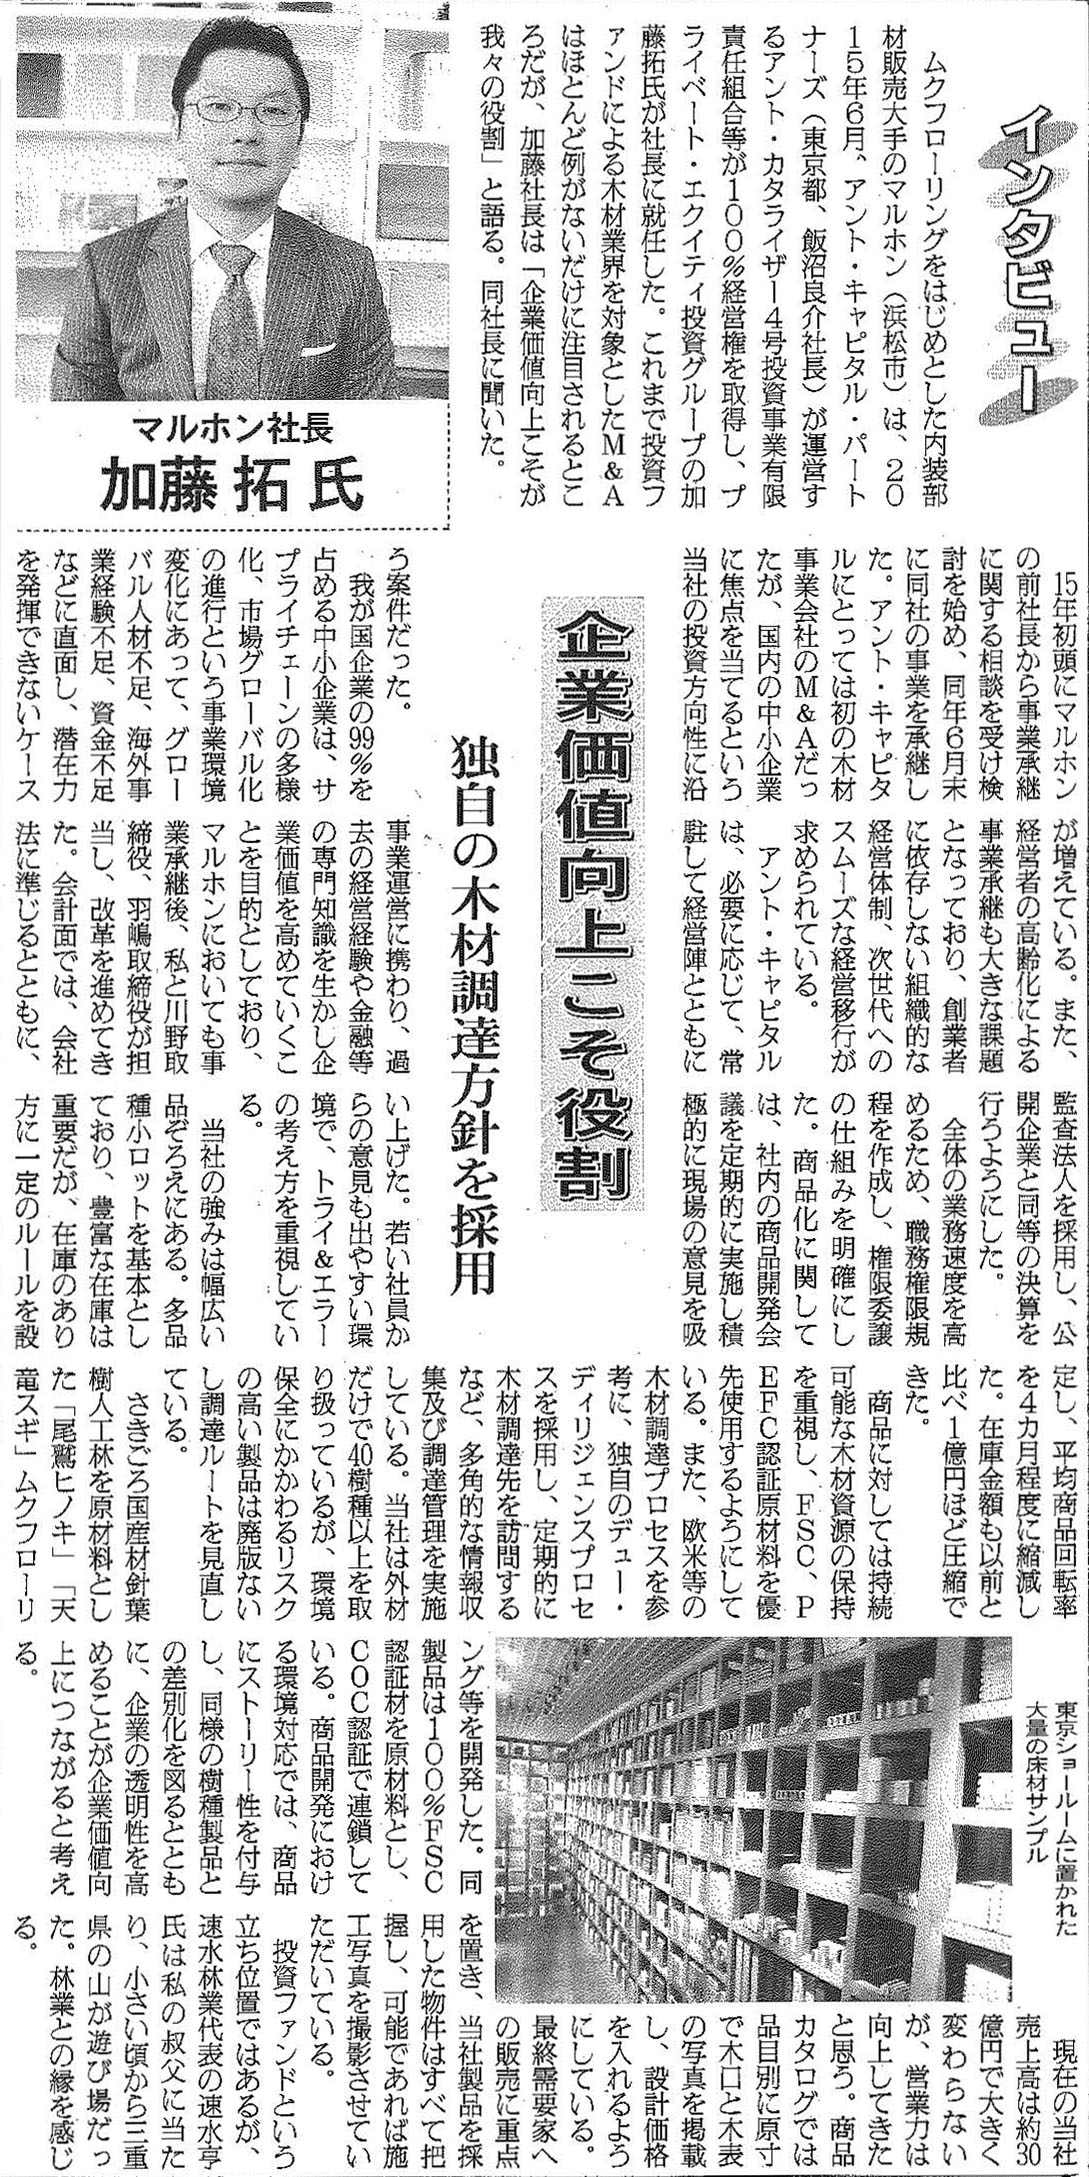 日刊木材新聞2017年7月4日付記事